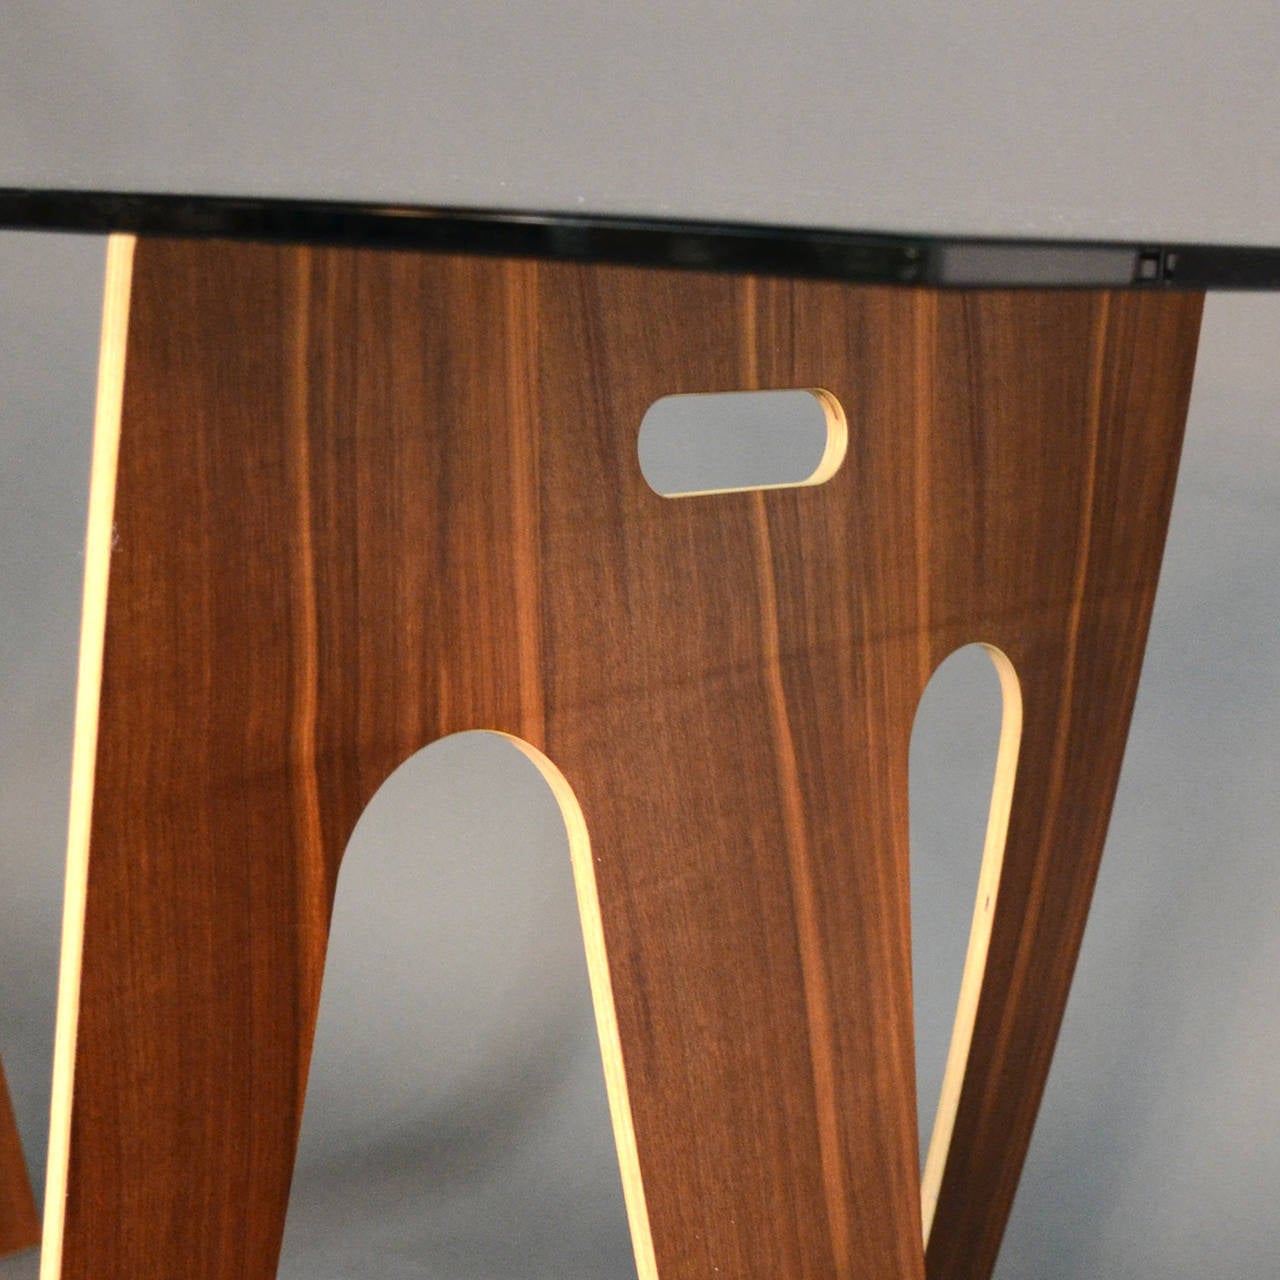 German Sidestep Table or Desk by Franck Thorsten